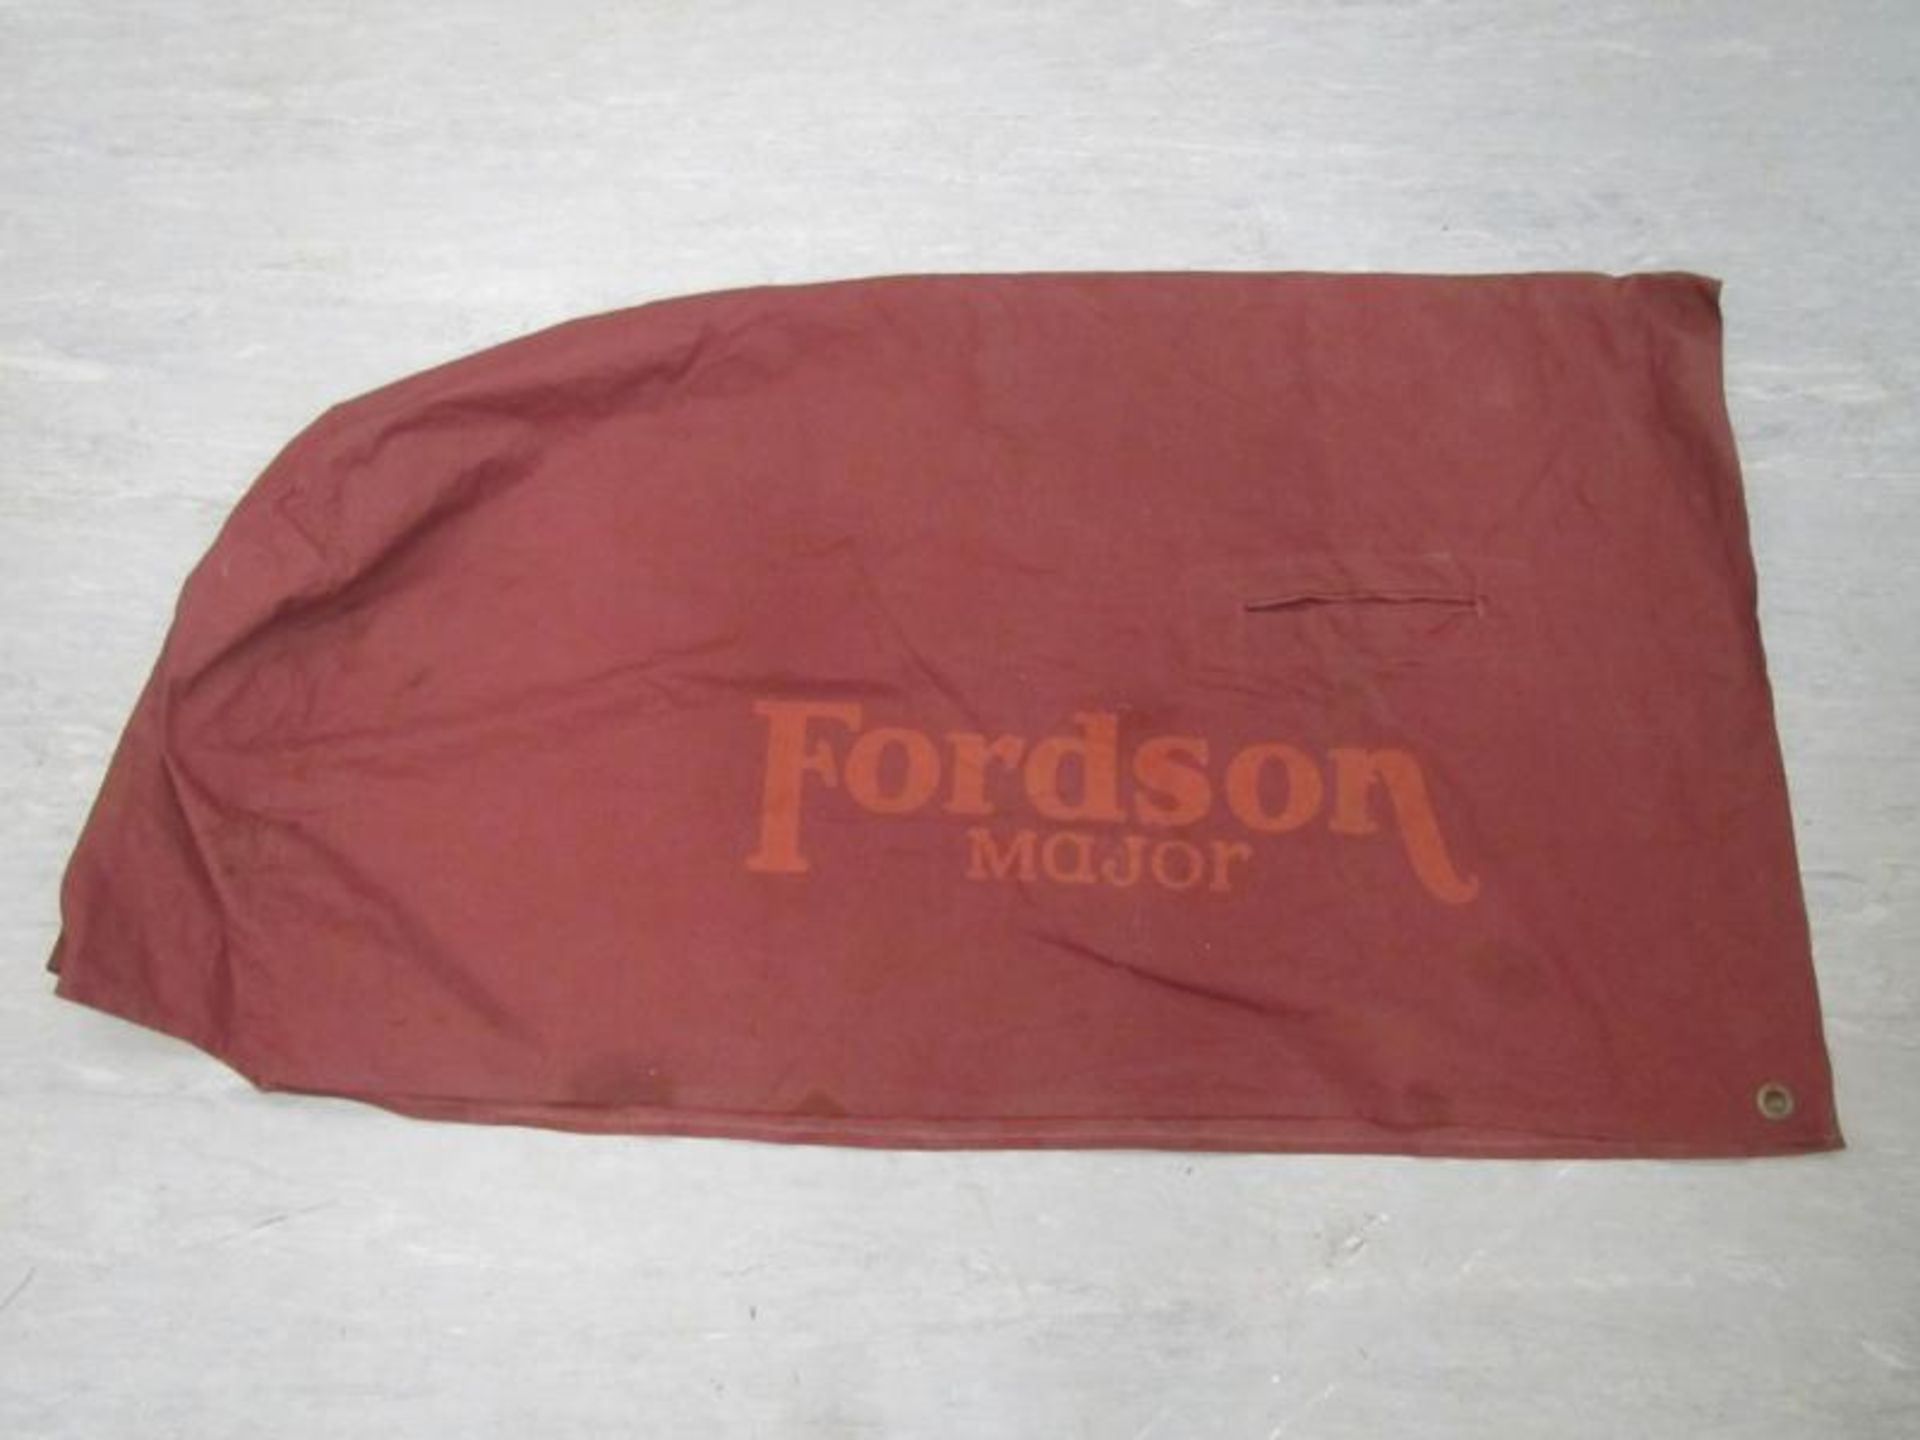 Fordson Major logo'd canvas bonnet cover